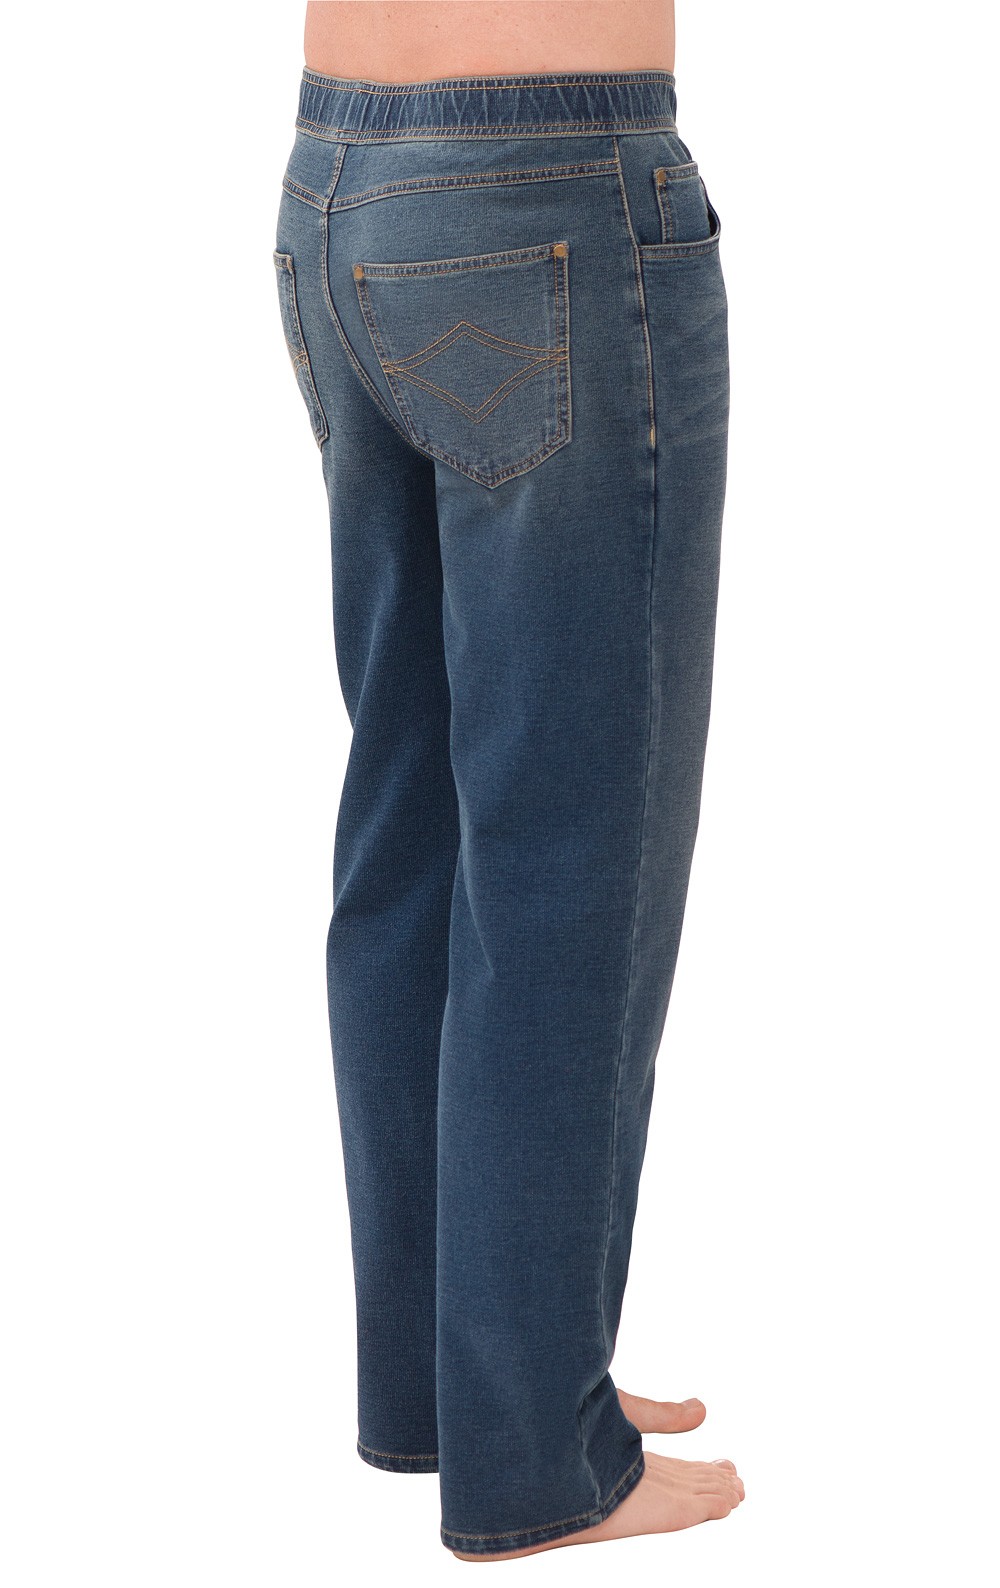 PajamaJeans® for Men - Vintage Wash in Men's Jeans